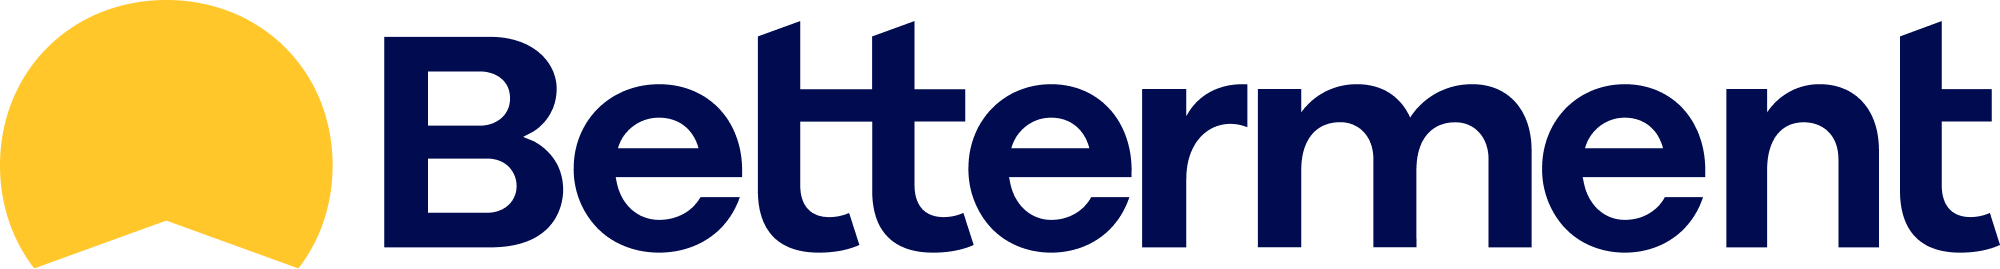 Betterment Logo Image